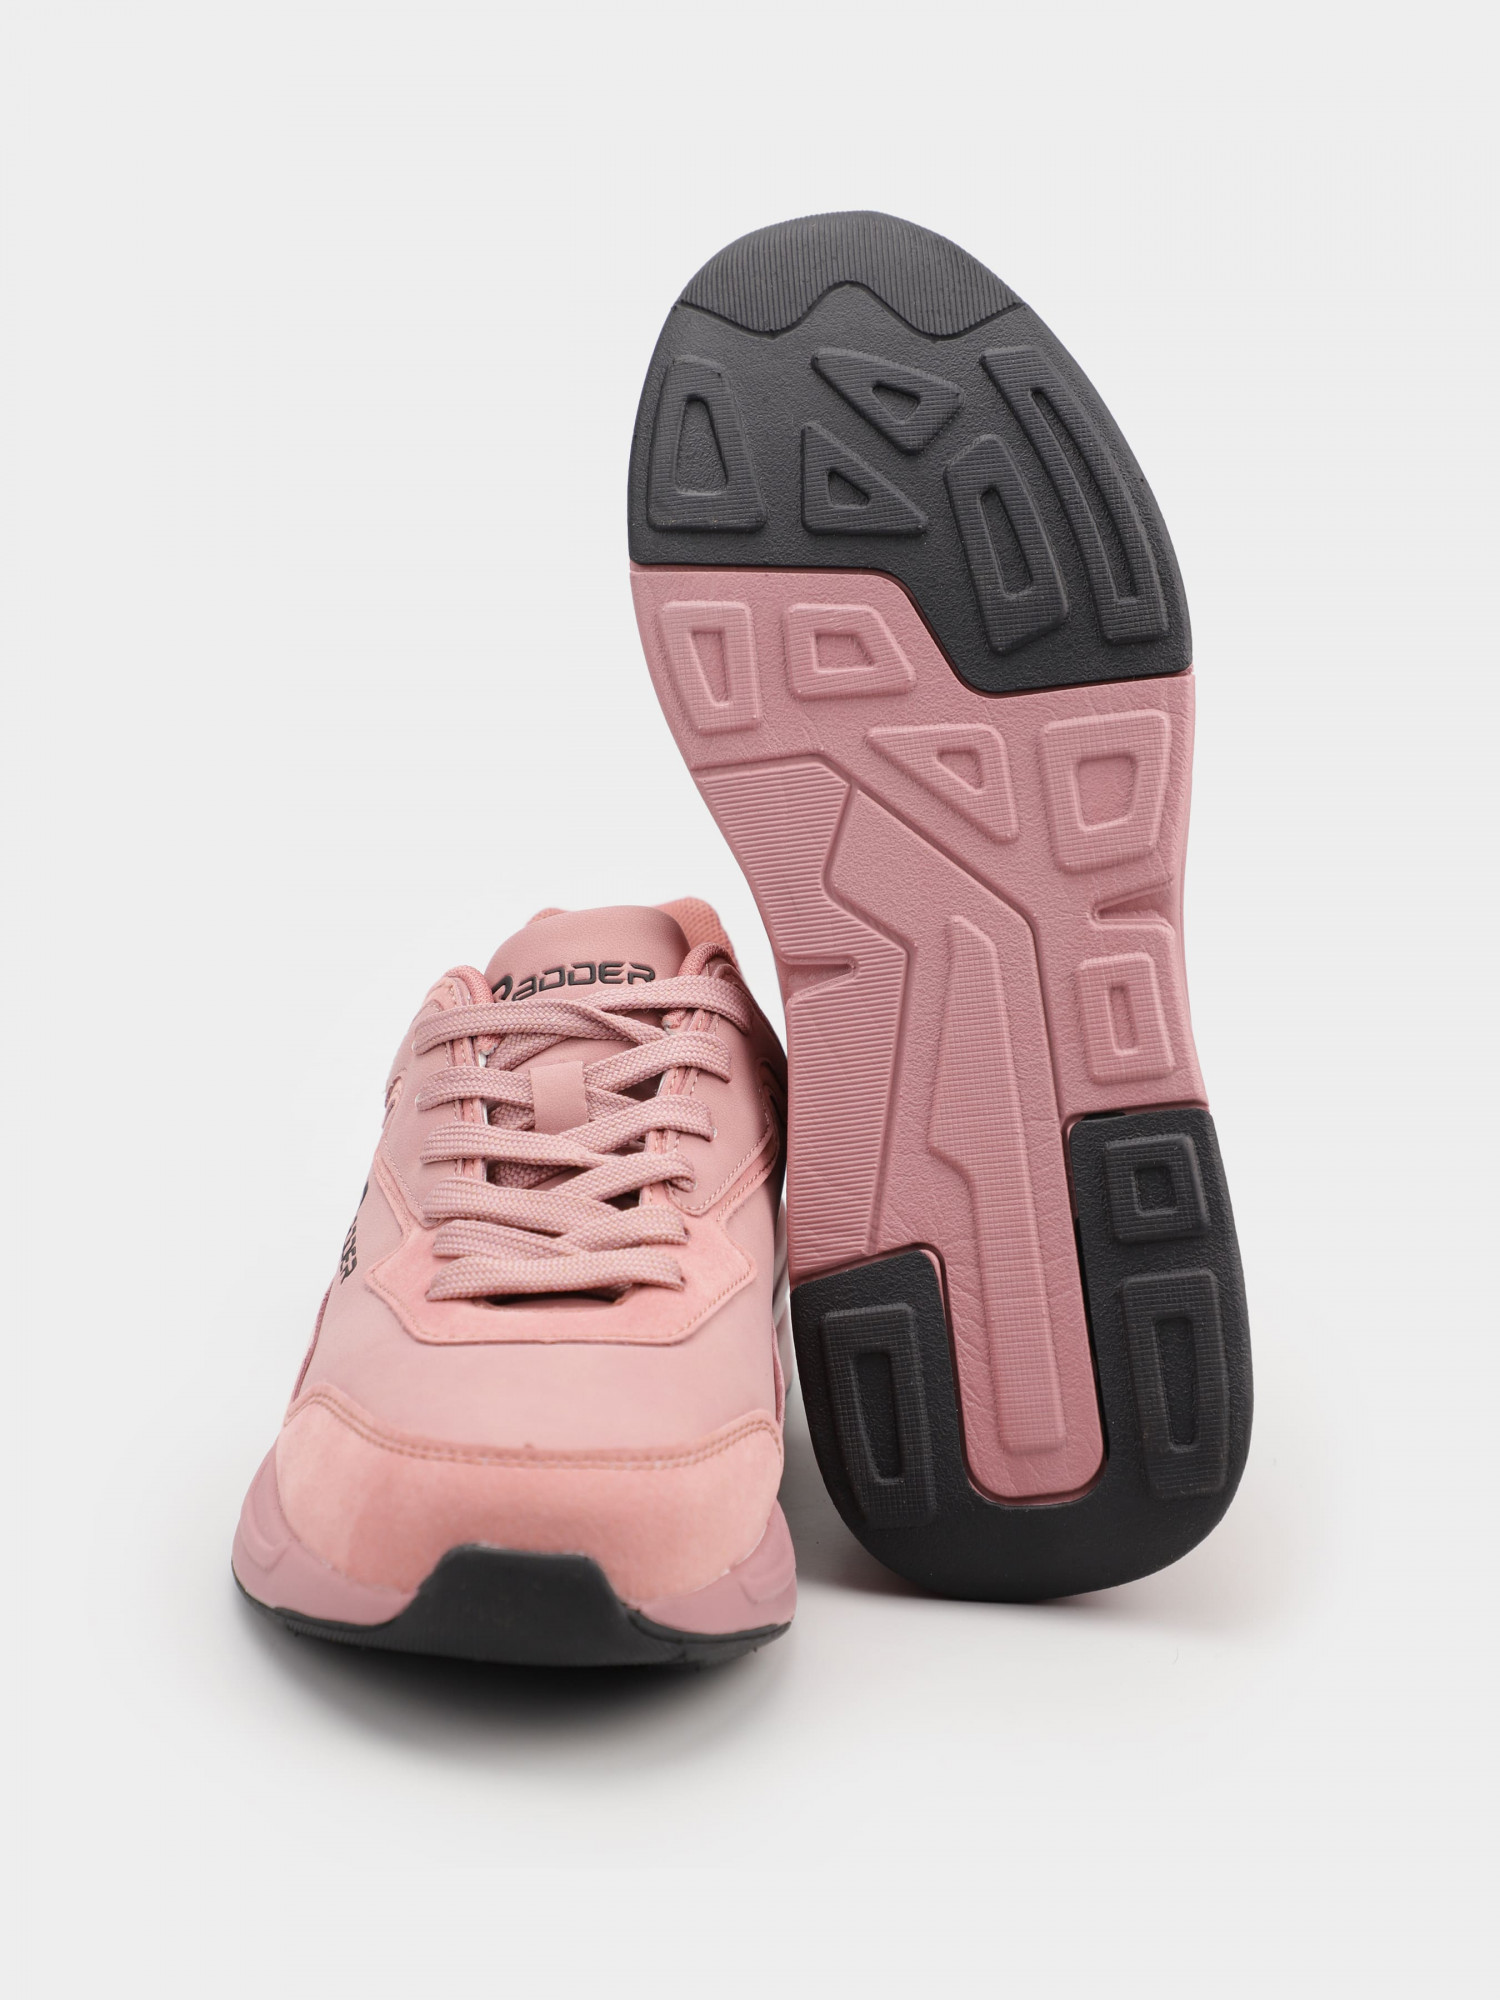 Кросівки жіночі Radder Sakura рожеві 402304-600